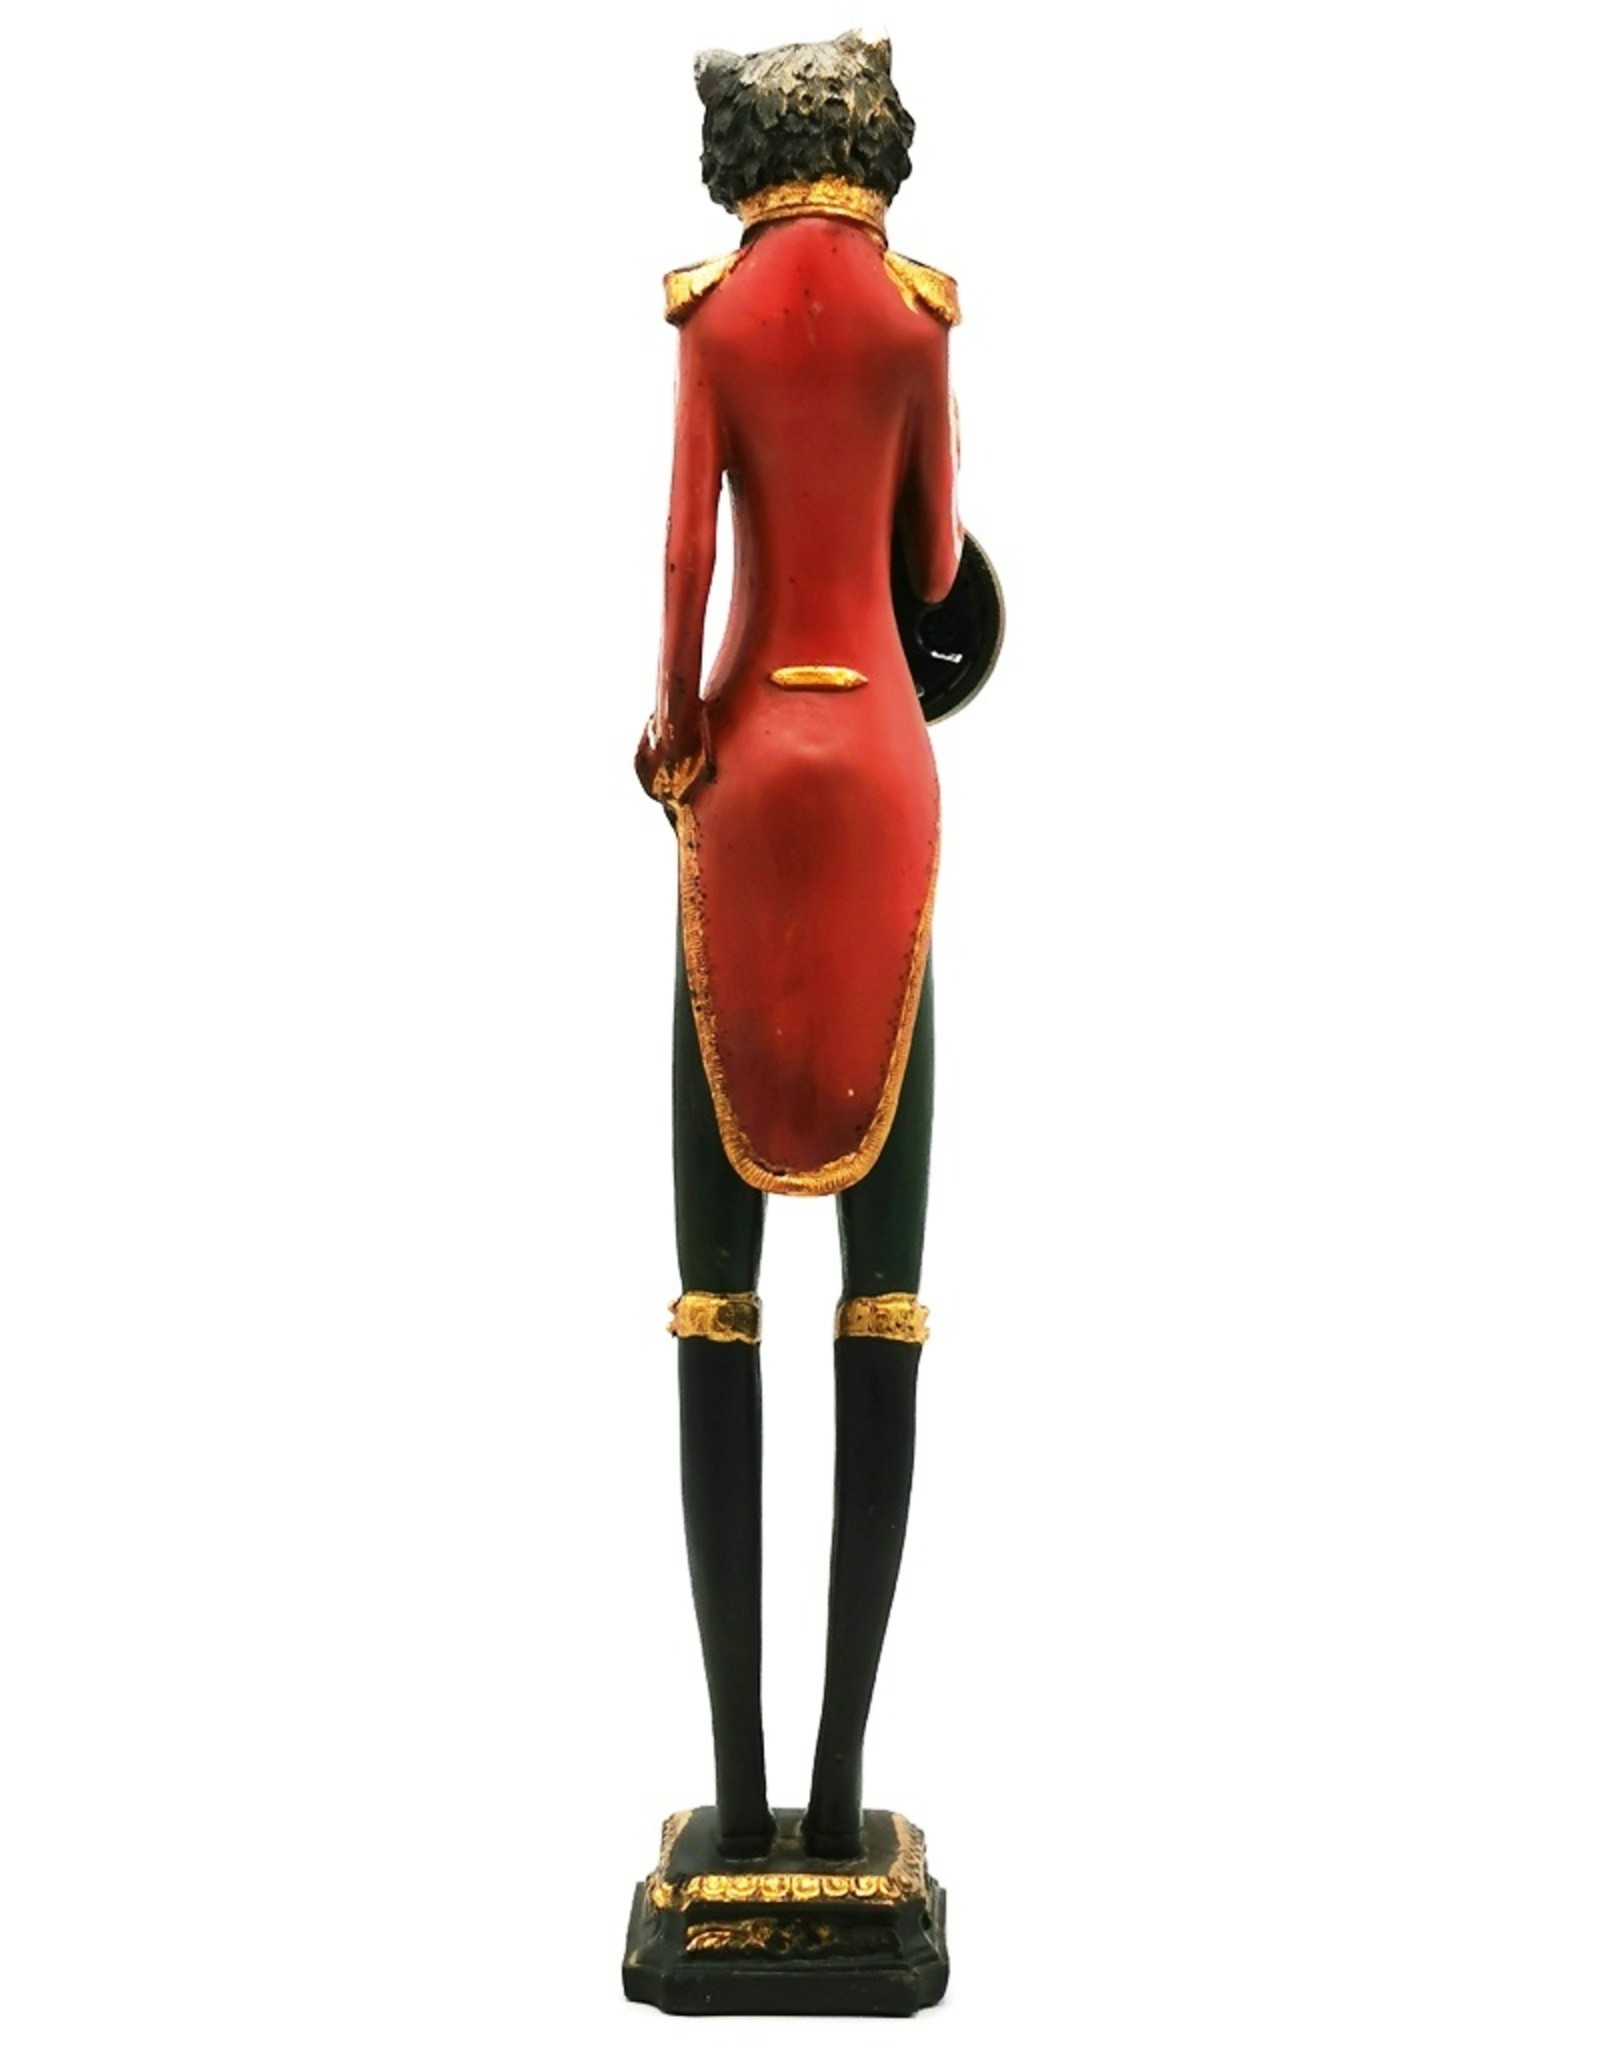 Trukado Giftware Beelden Collectables - Kat in Uniform met echte klok - beeld 43cm